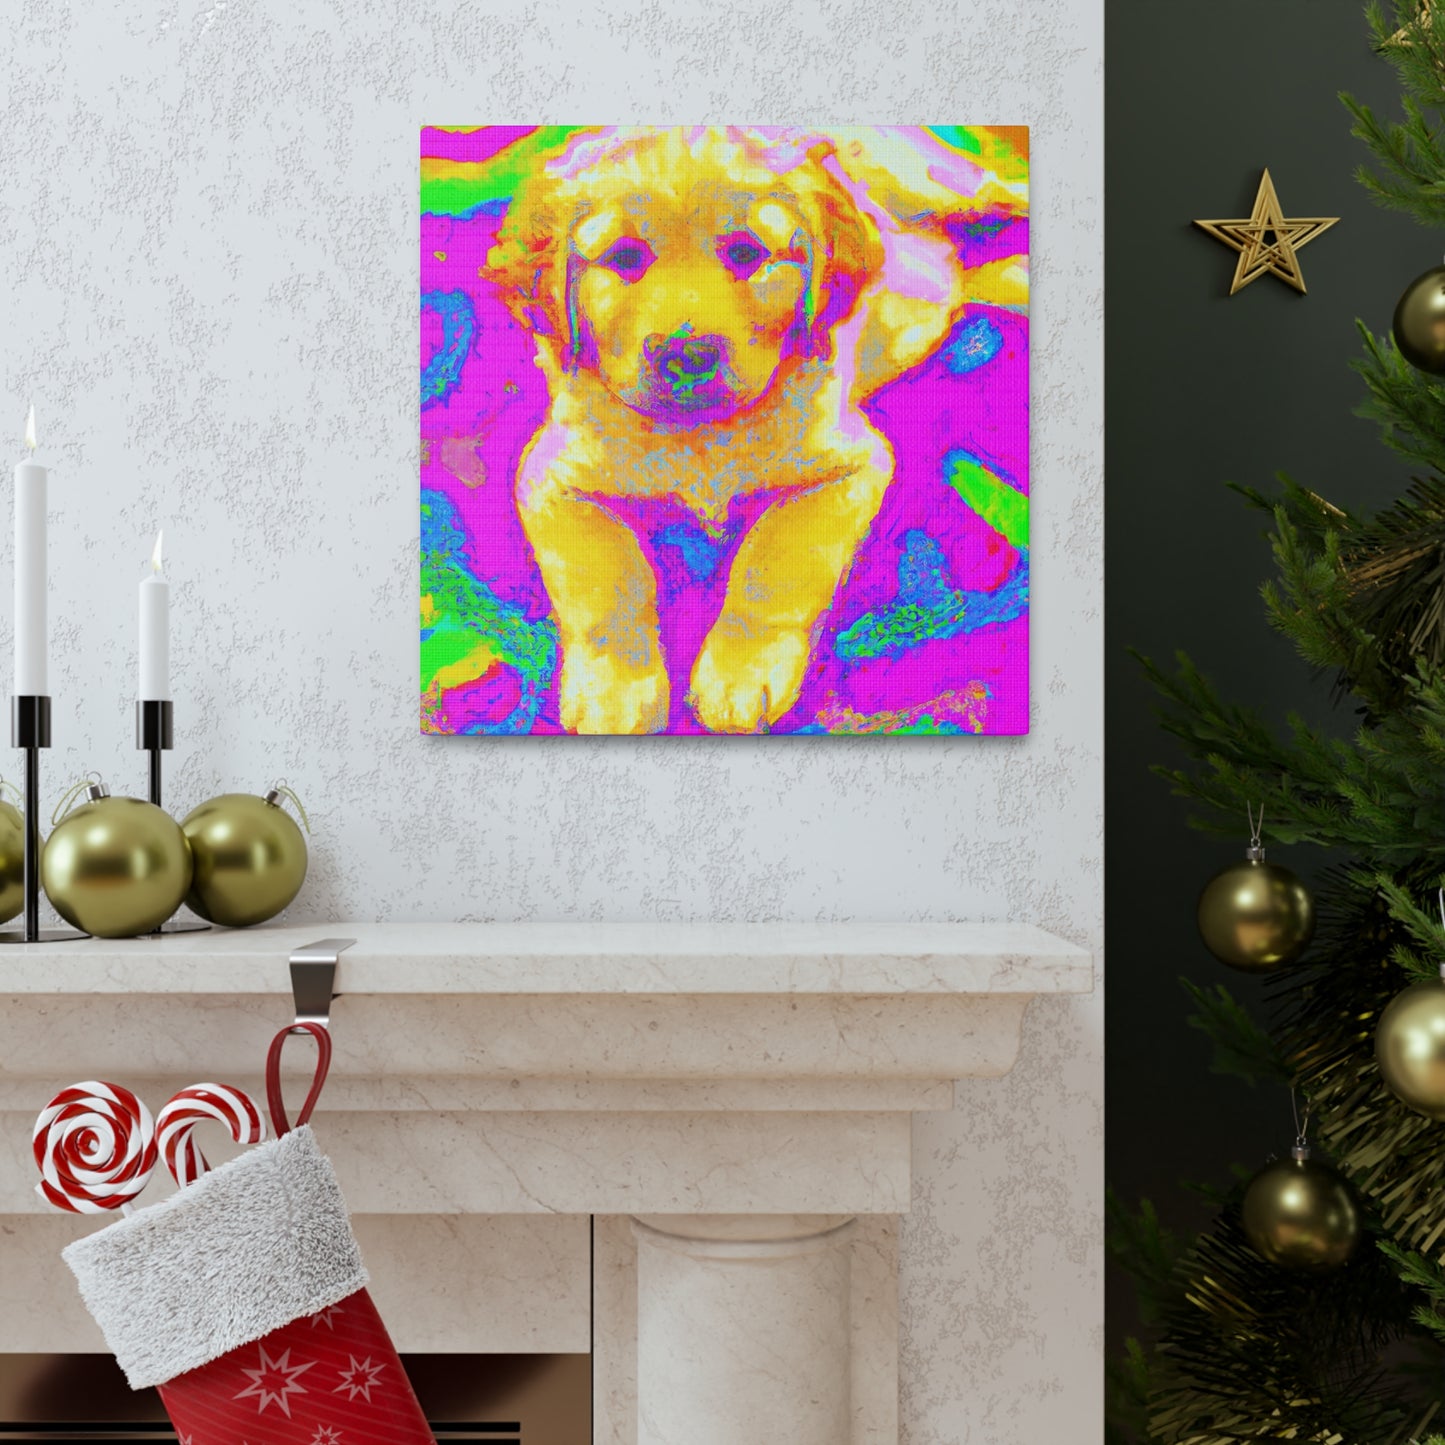 Kingston de la Vexis - Golden Retriever Puppy - Canvas